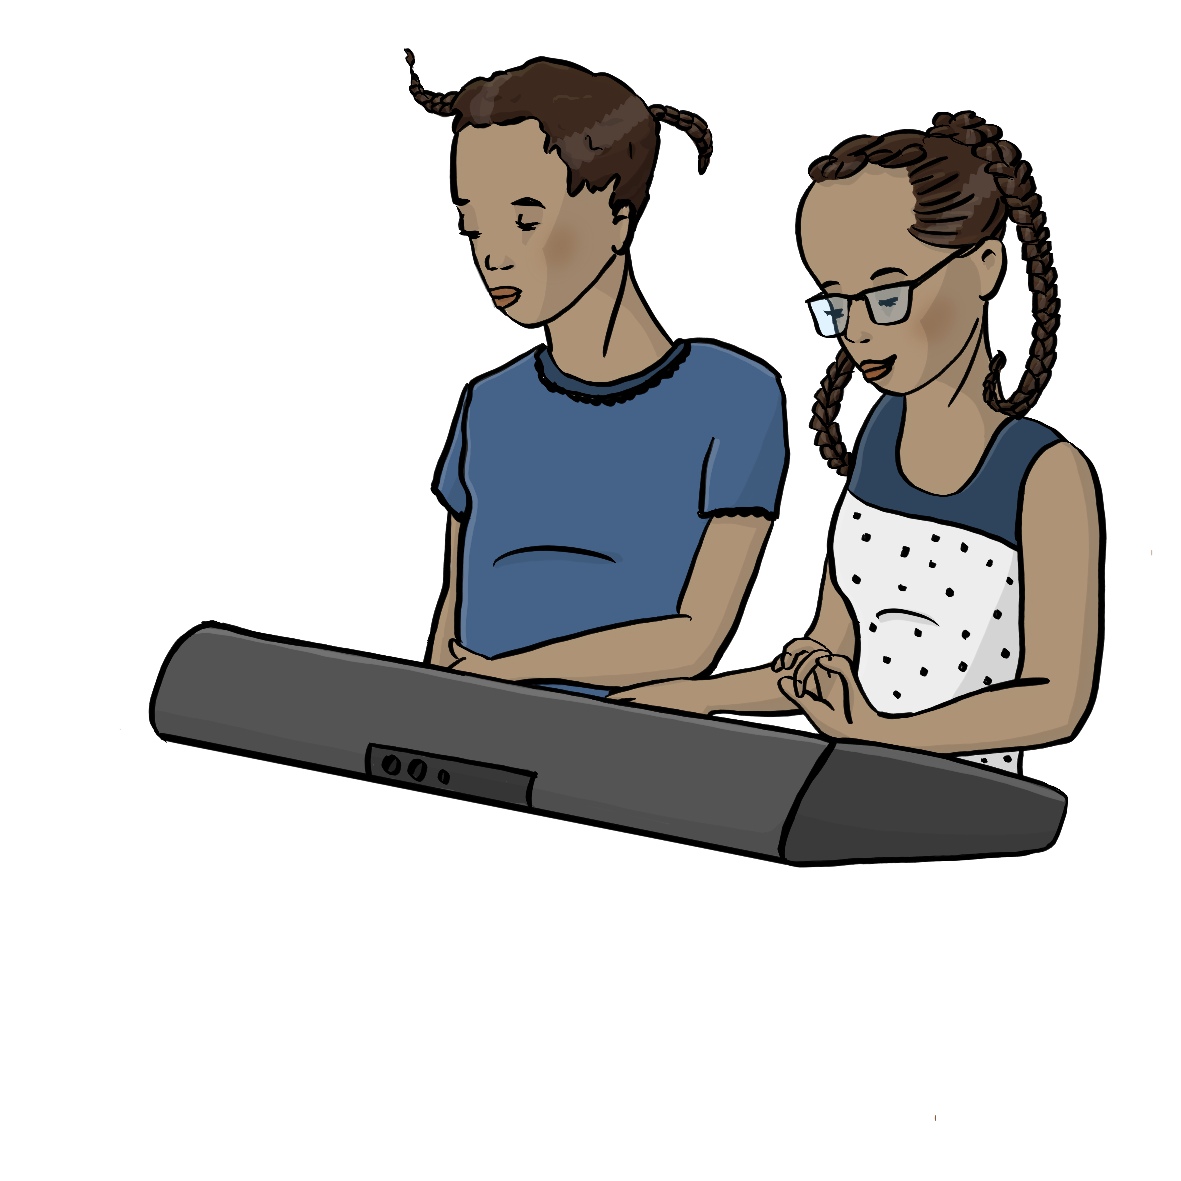 Zwei Mädchen spielen zusammen an einem elektronischen Klavier.